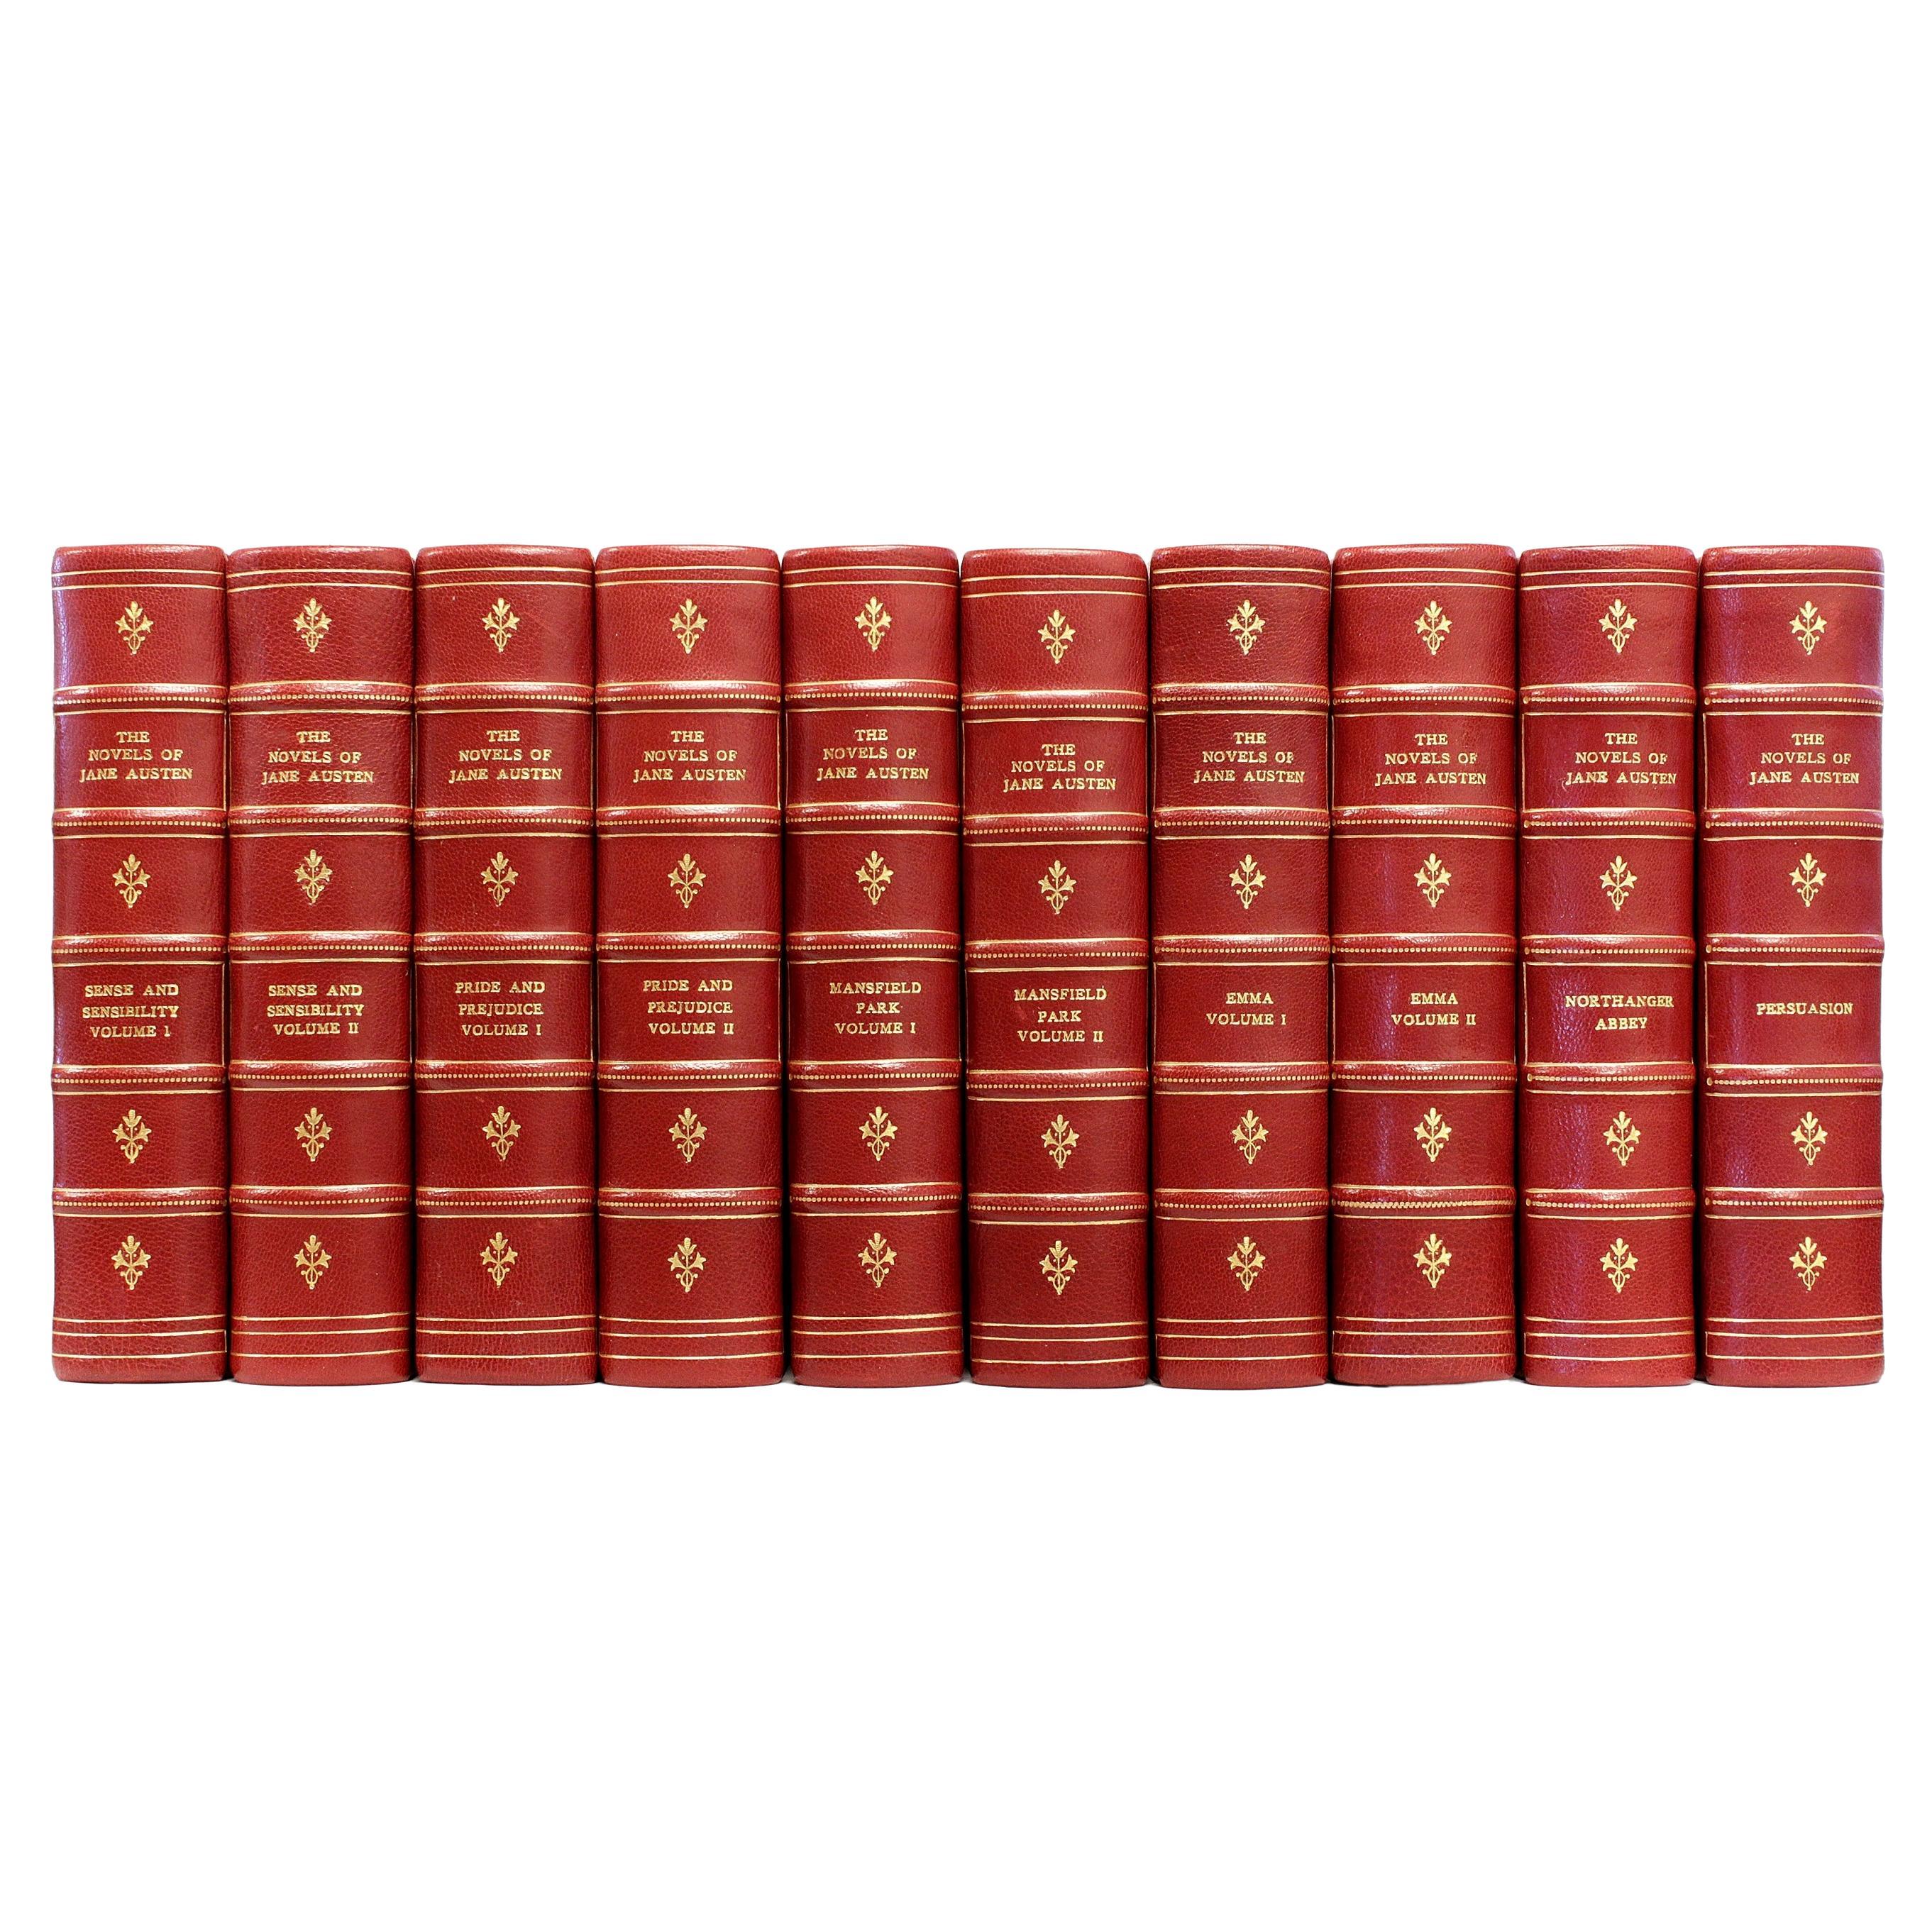 Novels „Works“ von Jane Austen. Winchester-Ausgabe, 10 Bände, 1906, Ledergebunden